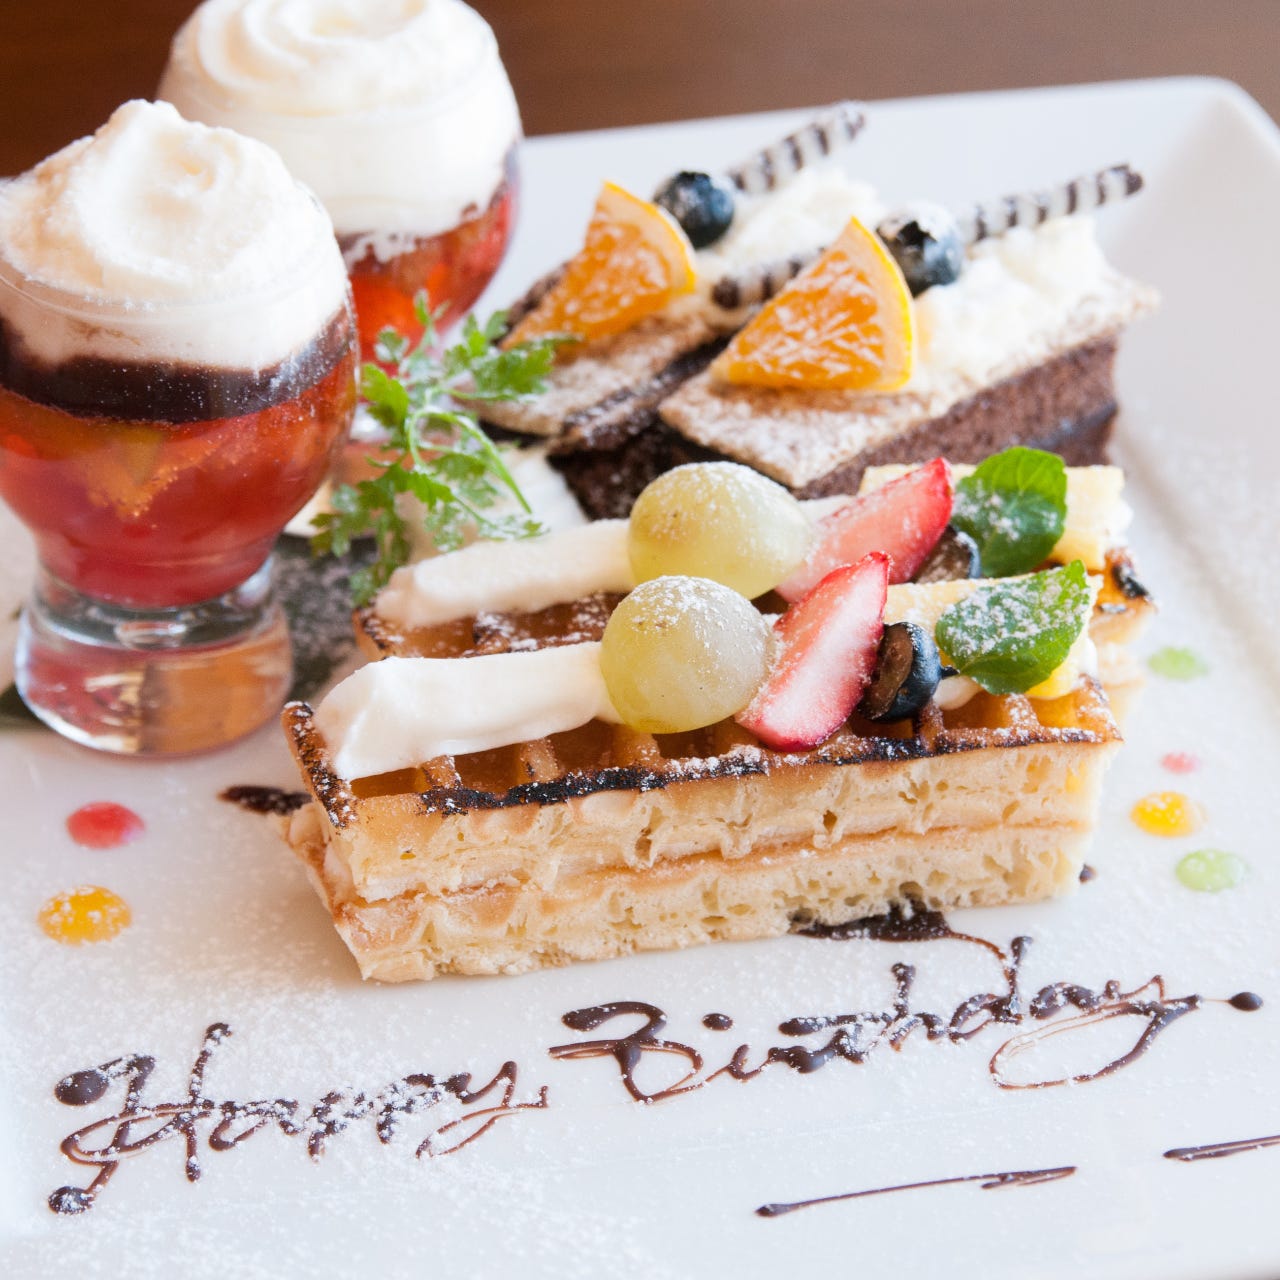 22年 最新グルメ 神奈川 誕生日サプライズがあるお店 レストラン カフェ 居酒屋のネット予約 神奈川版